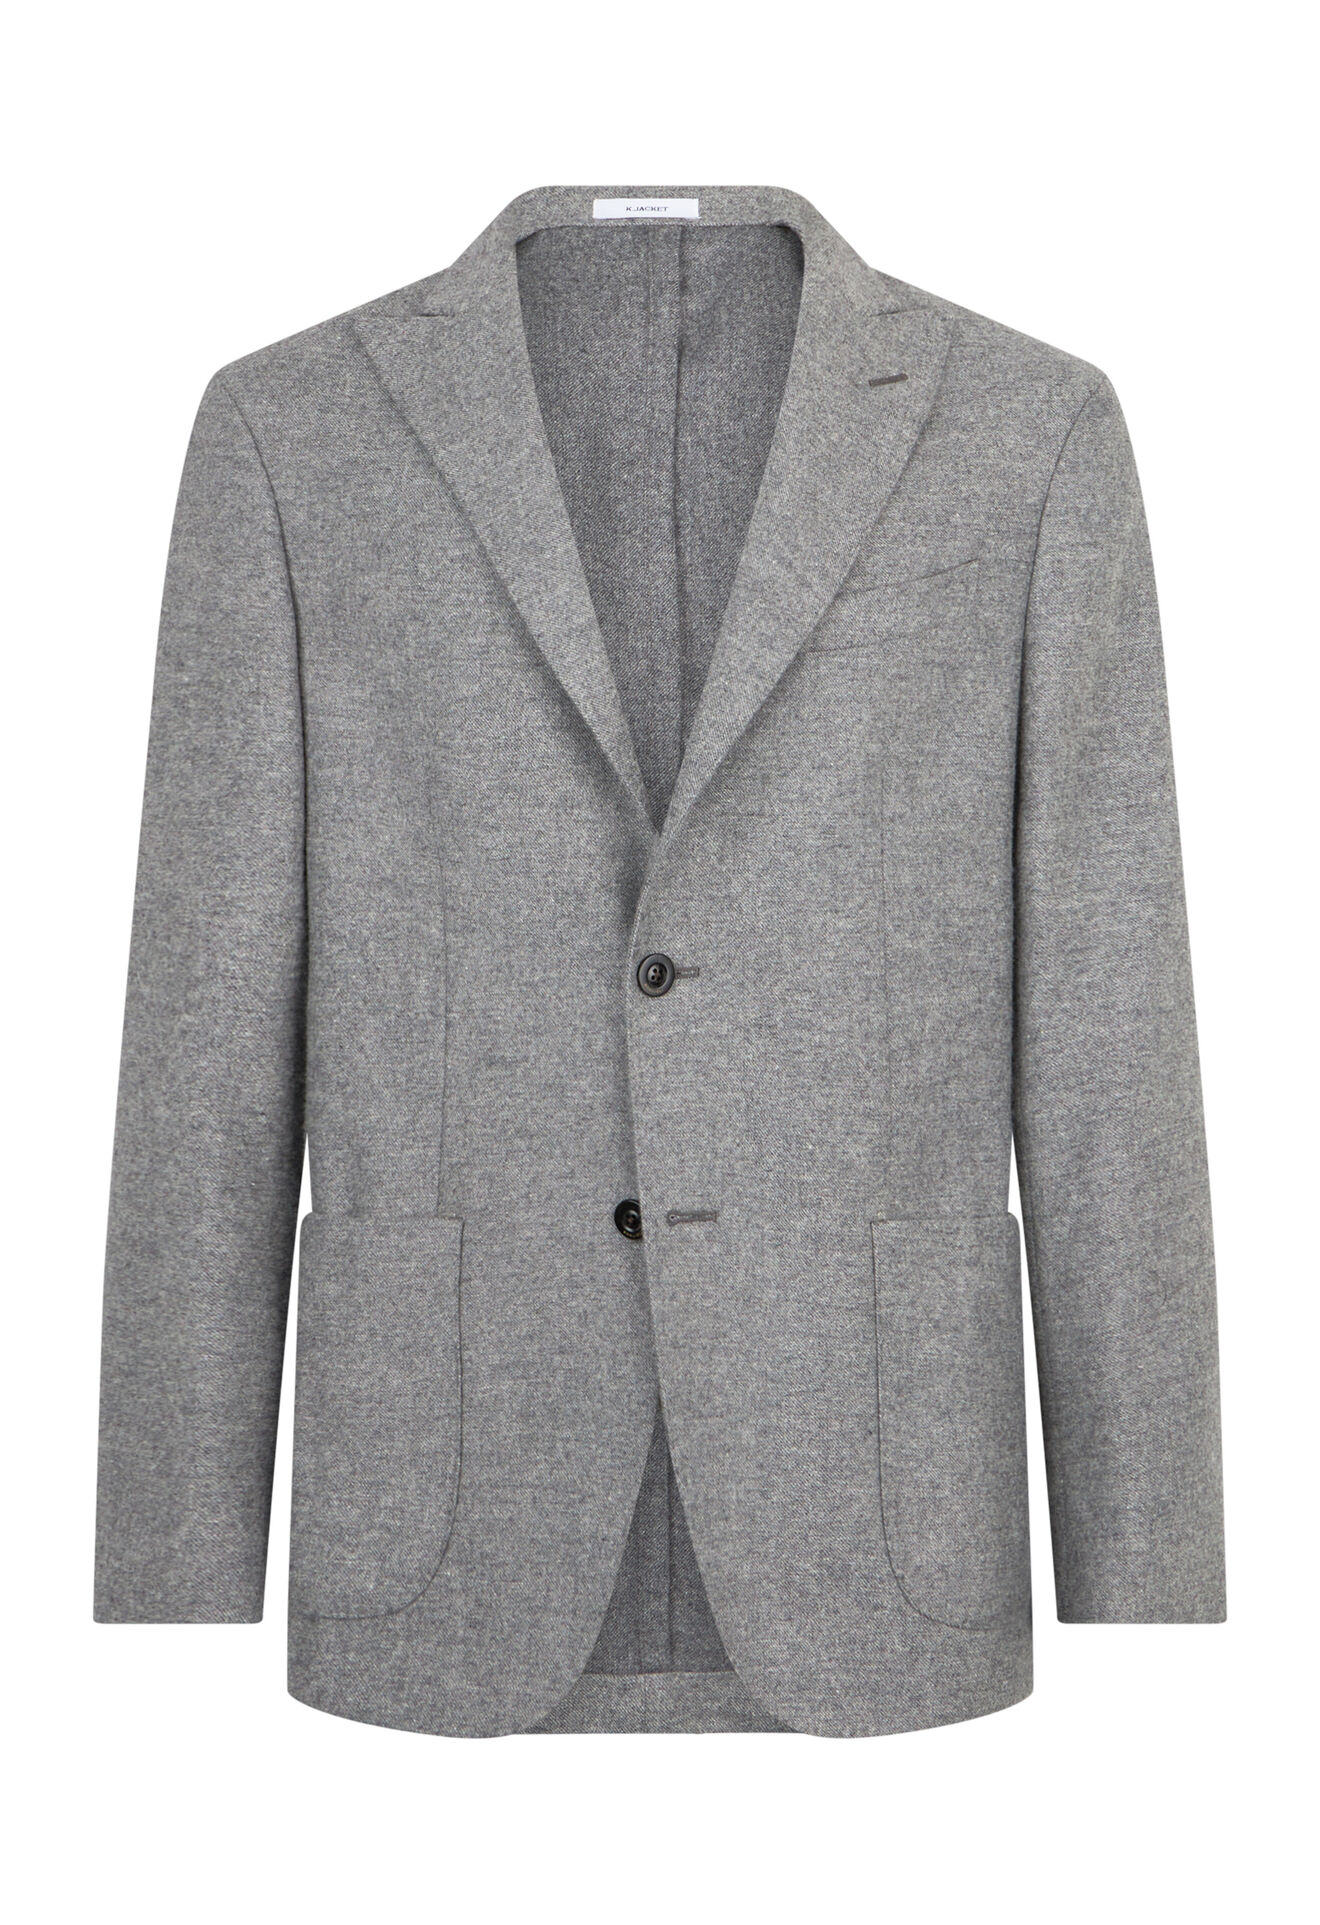 100% virgin wool K-Jacket in Grey: Luxury Italian Jackets for Men